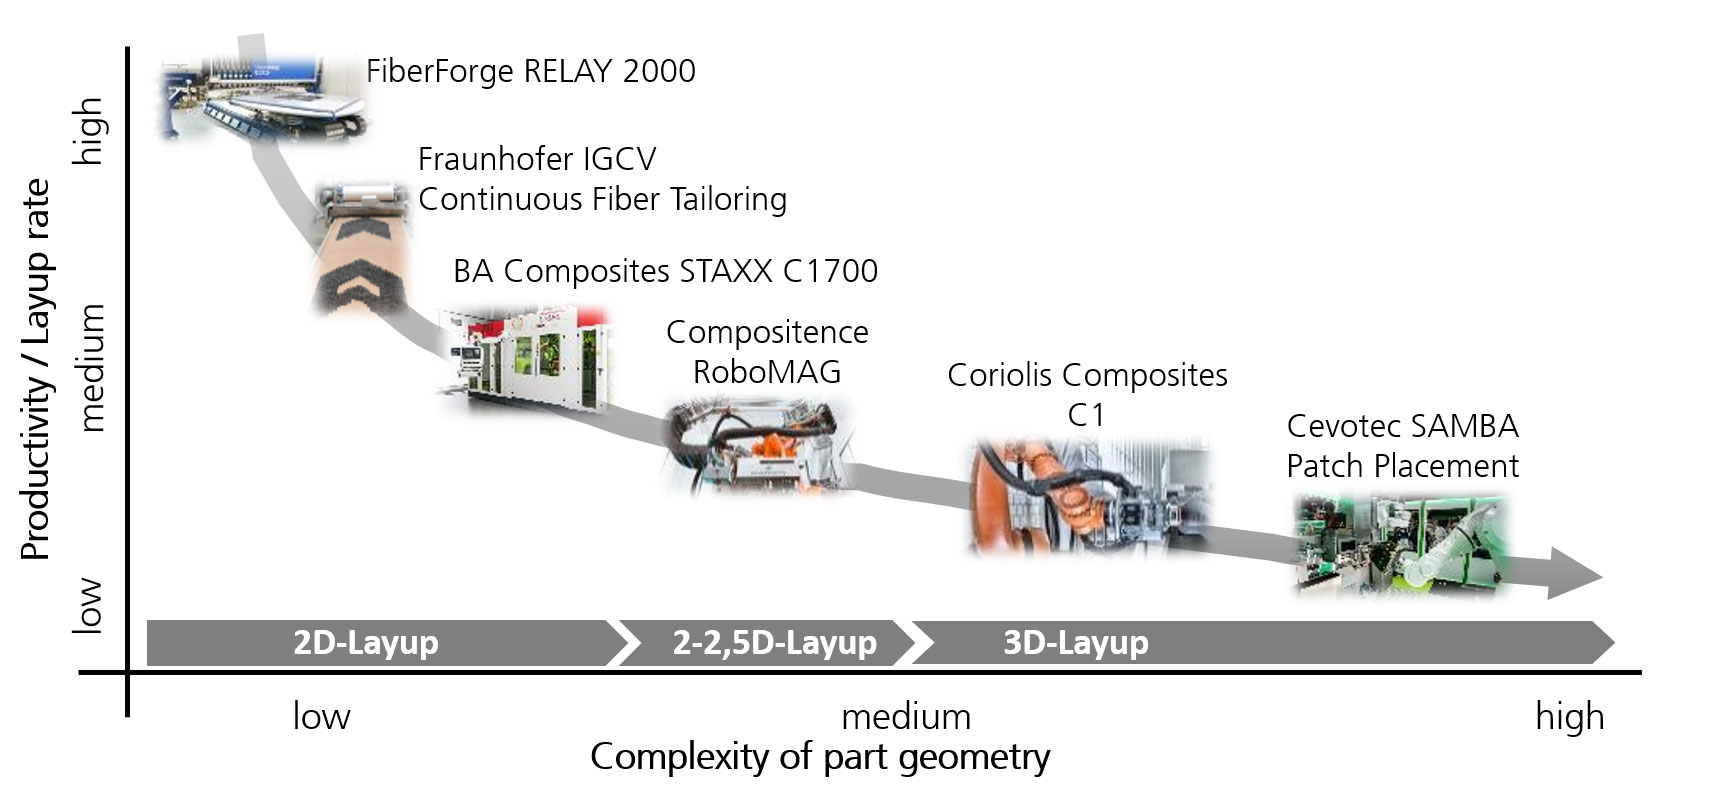 Pareto-Ansicht konkurrierender Fertigungsverfahren für Composite-Bauteile am Fraunhofer IGCV 